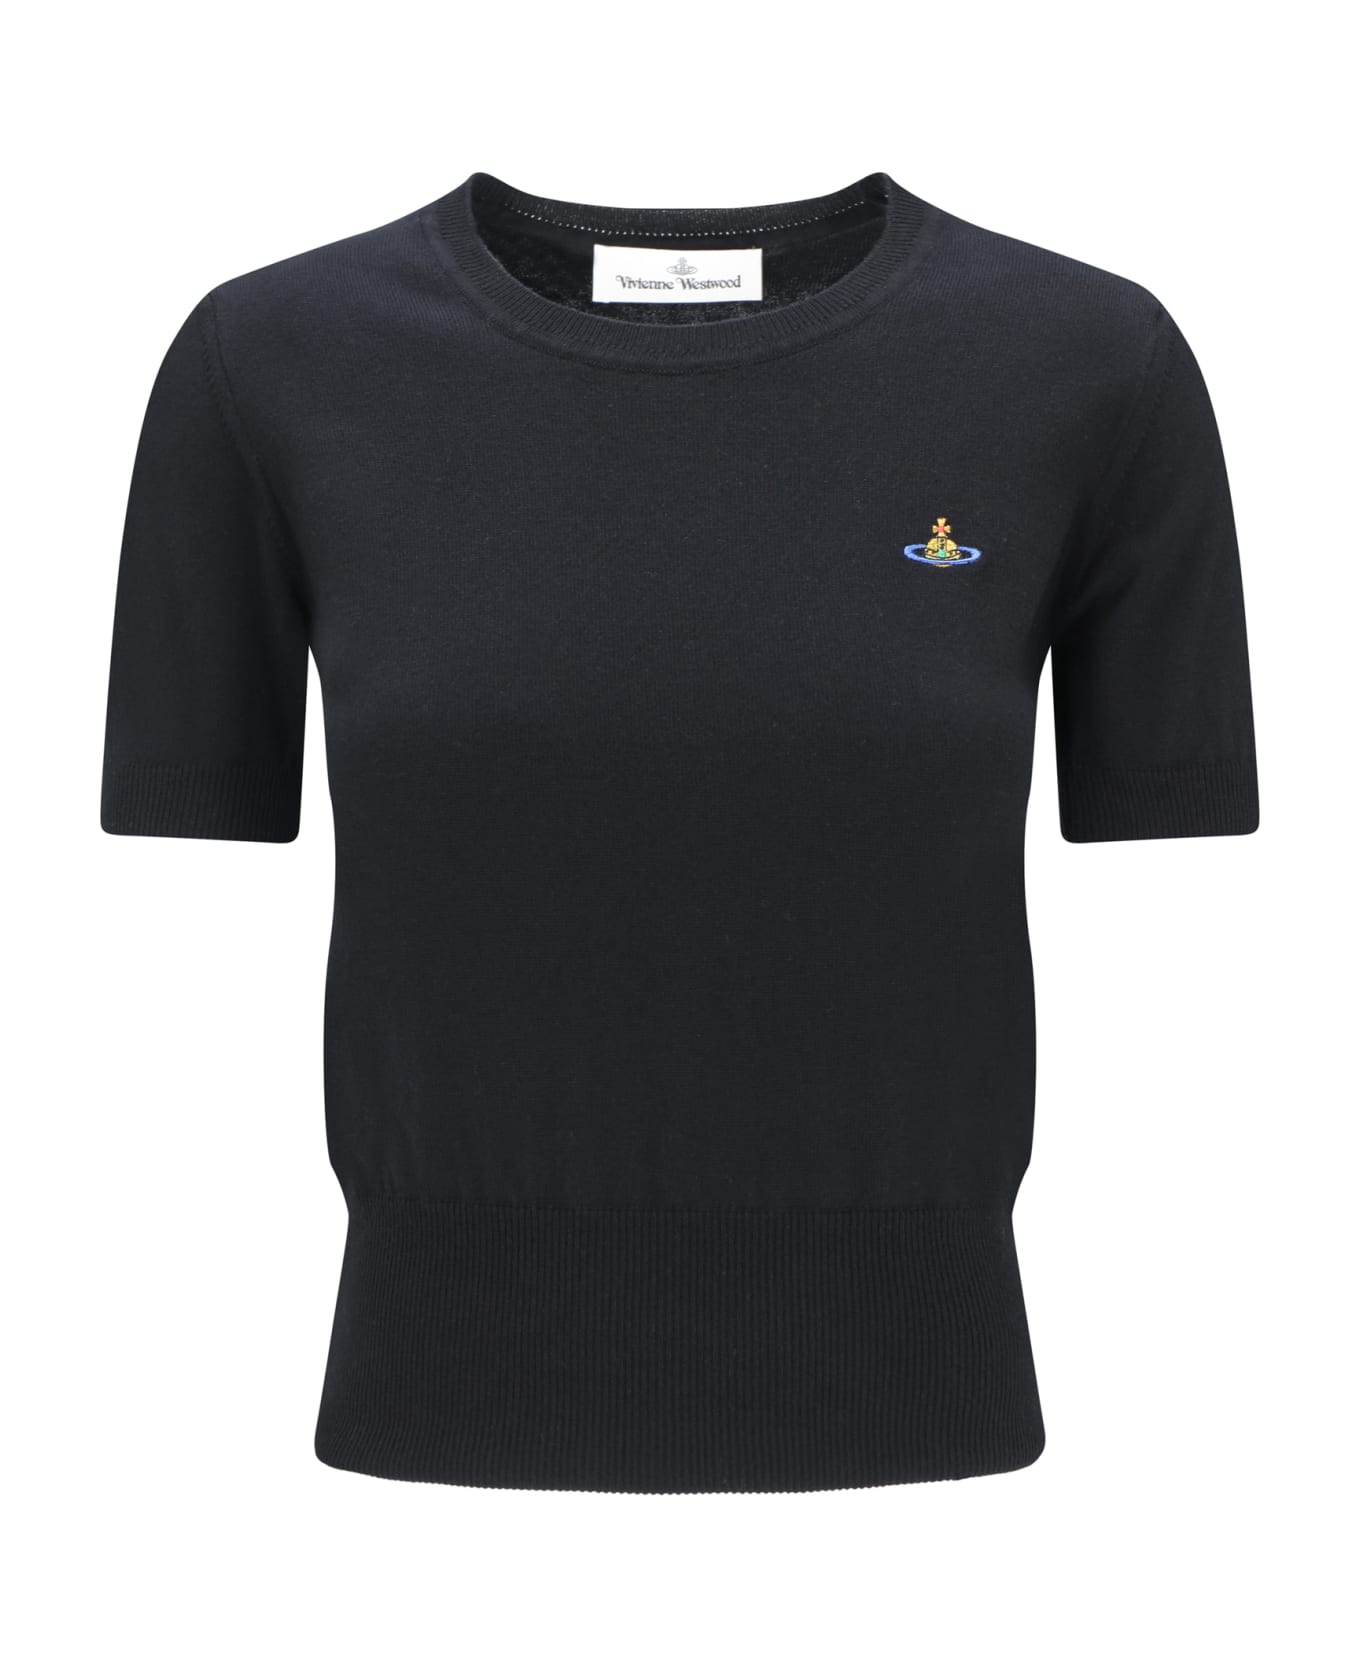 Vivienne Westwood Bea T-shirt - Black